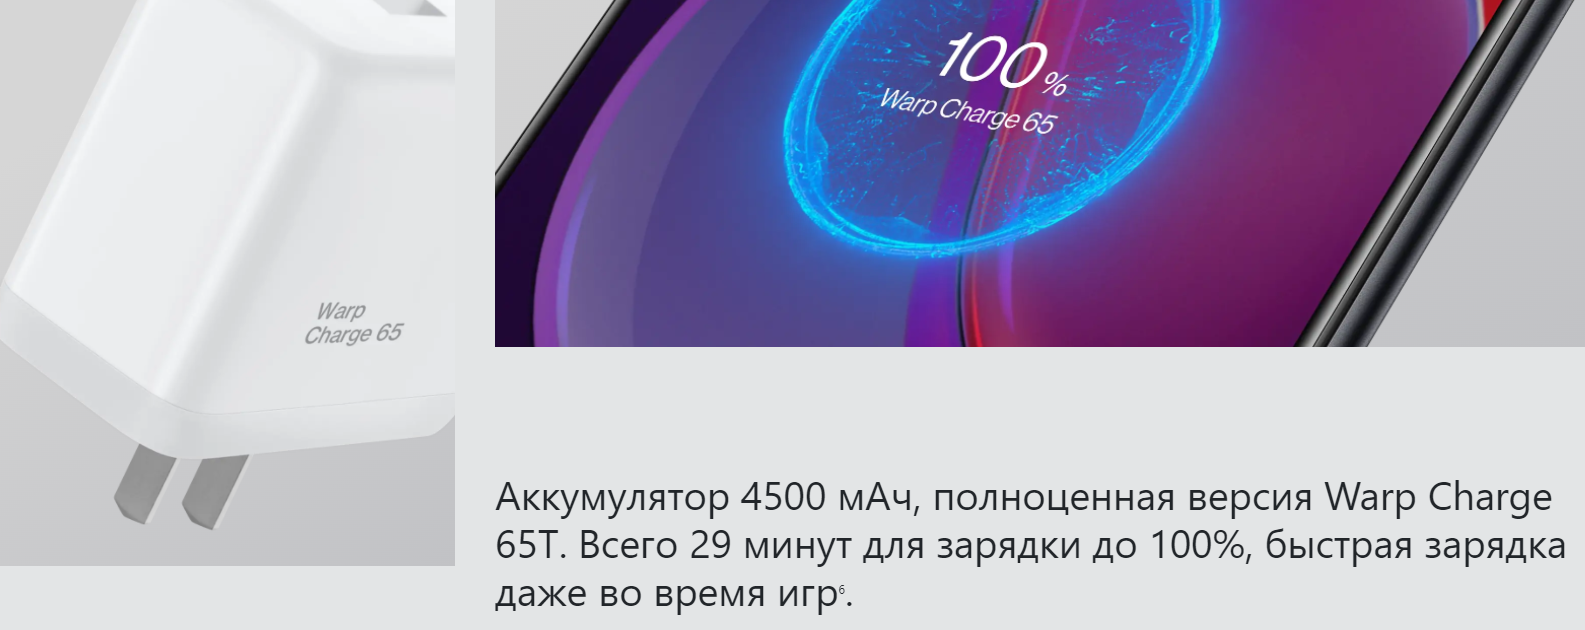 OnePlus 9RT в беларуси